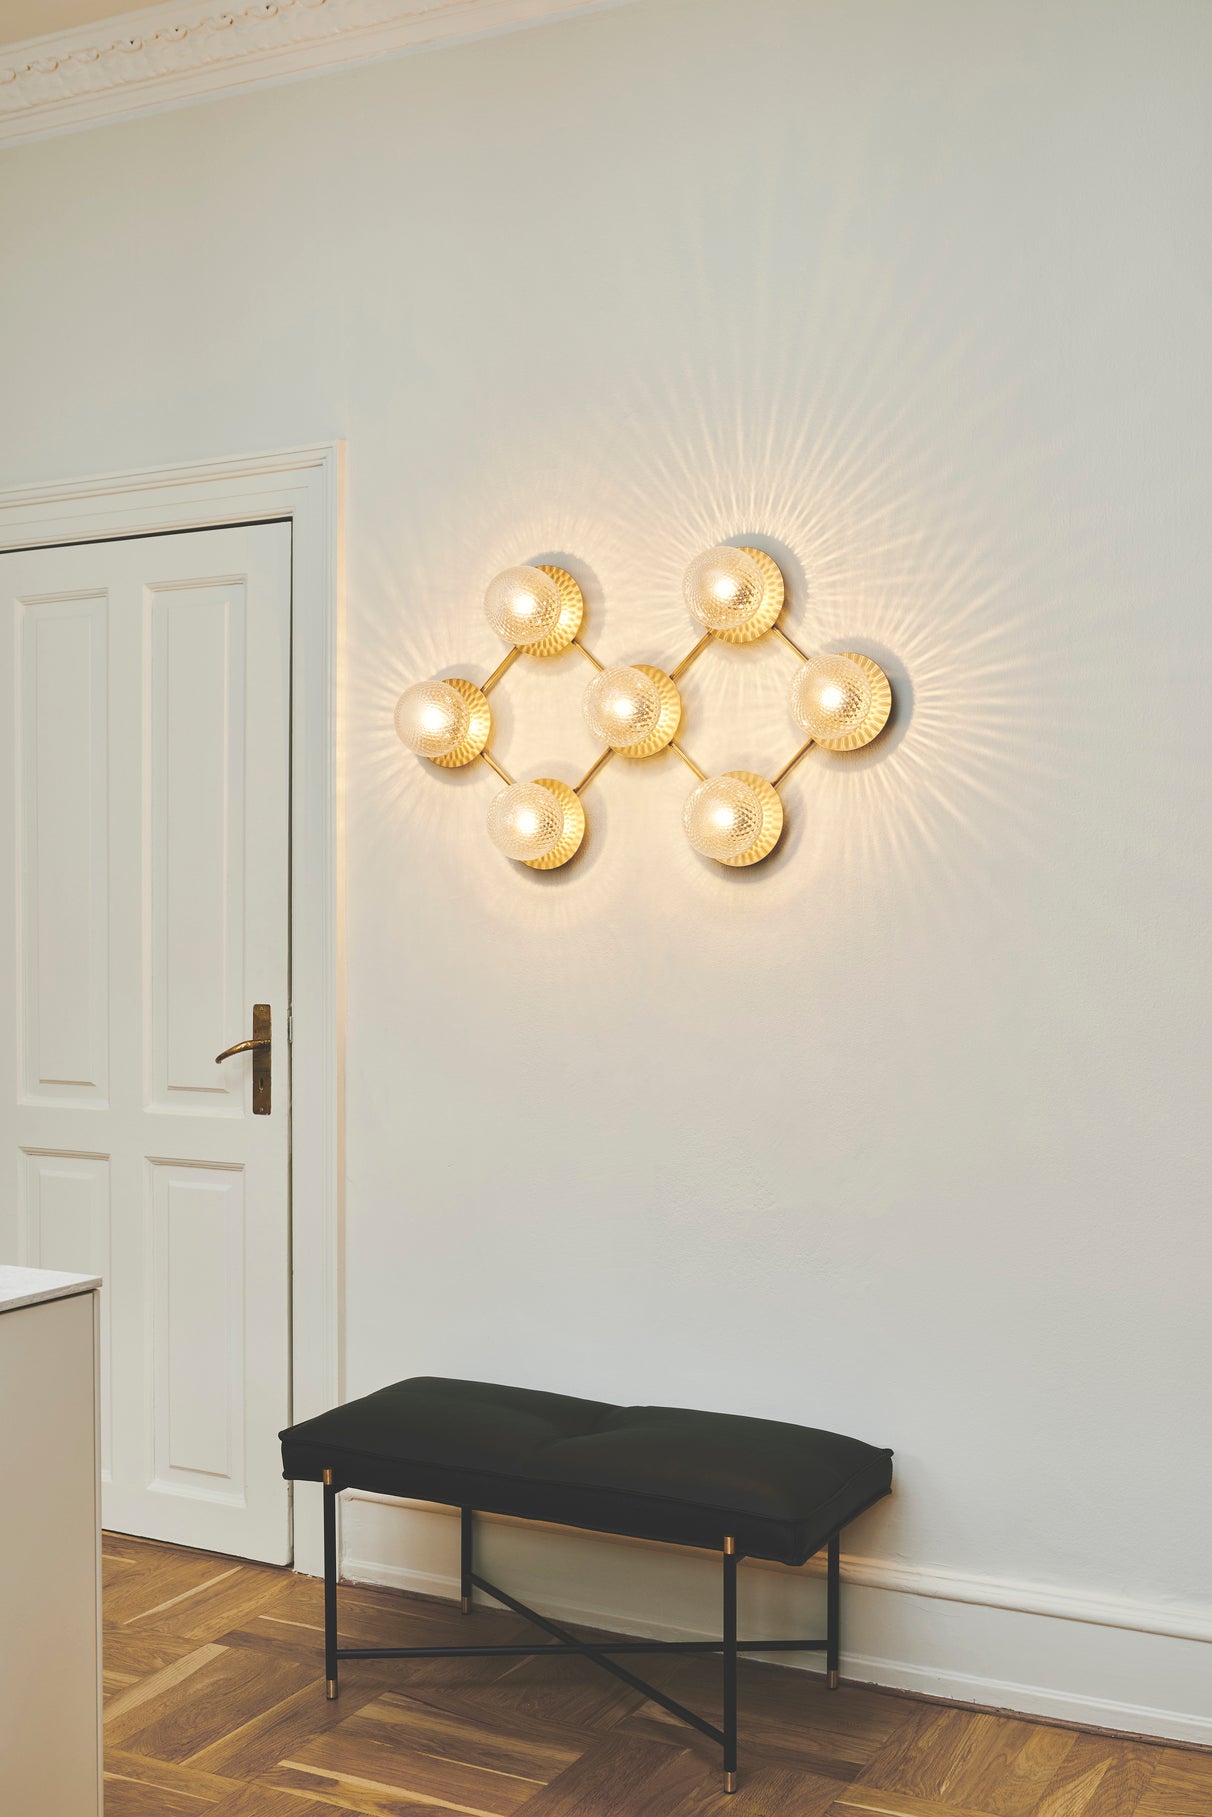 Væglampe med lampeskærme af klart optikglas og gylden fatning og stel, på hvid væg over bænk